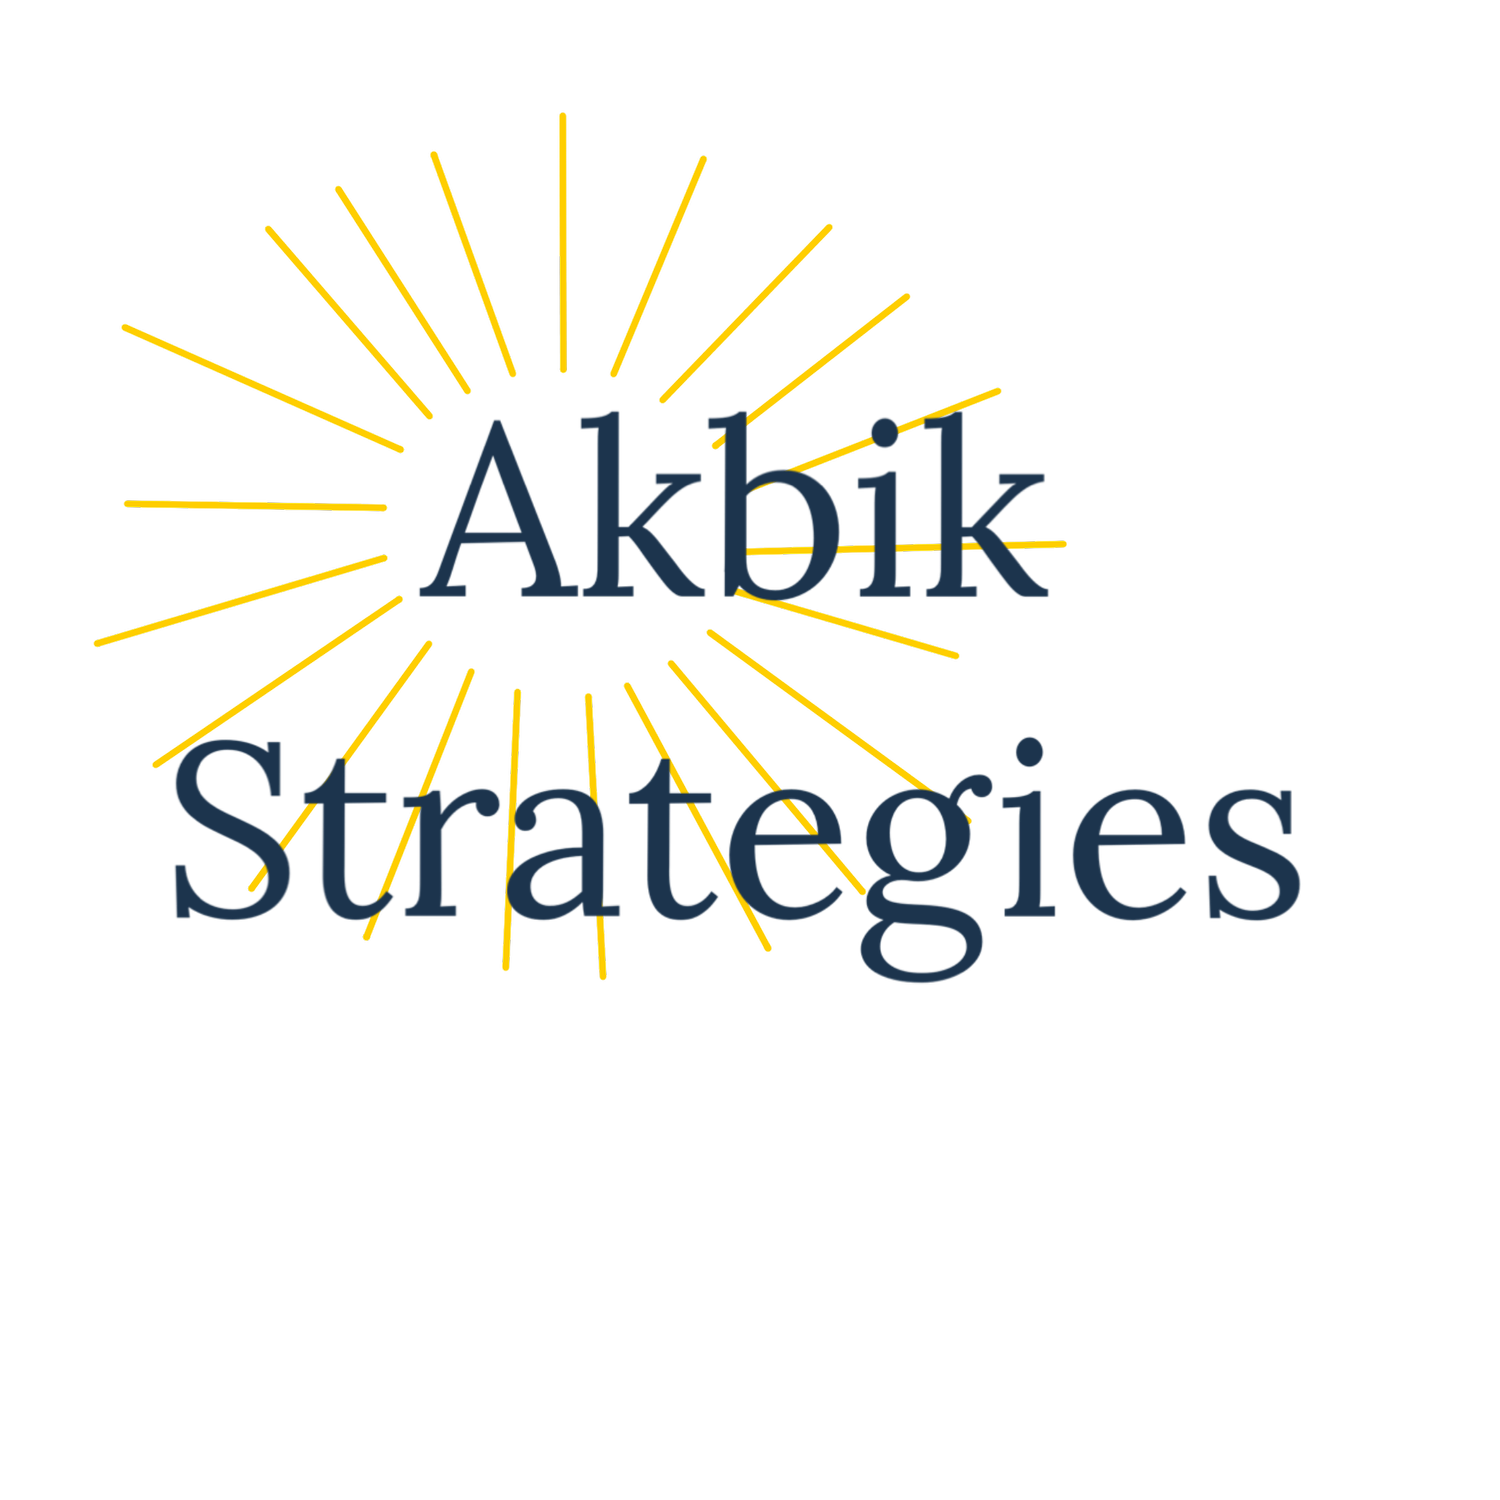 Akbik Strategies LLC